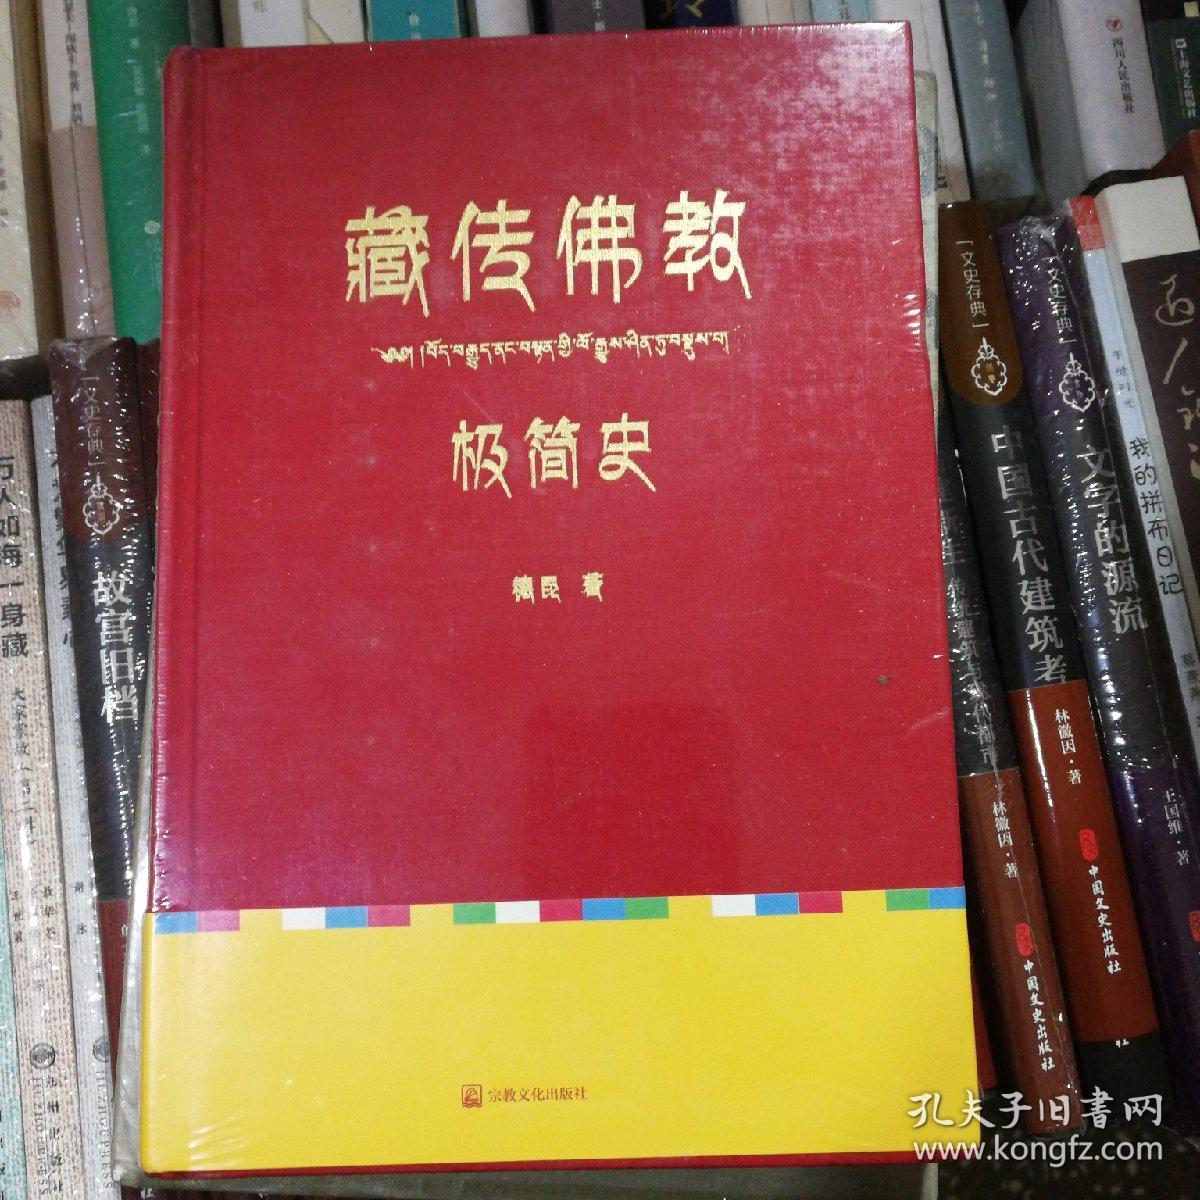 藏传佛教极简史（一本真诚而有温度的藏传佛教发展史，佛教徒的指引书，佛学爱好者的入门书，大众读者的历史普及书。）